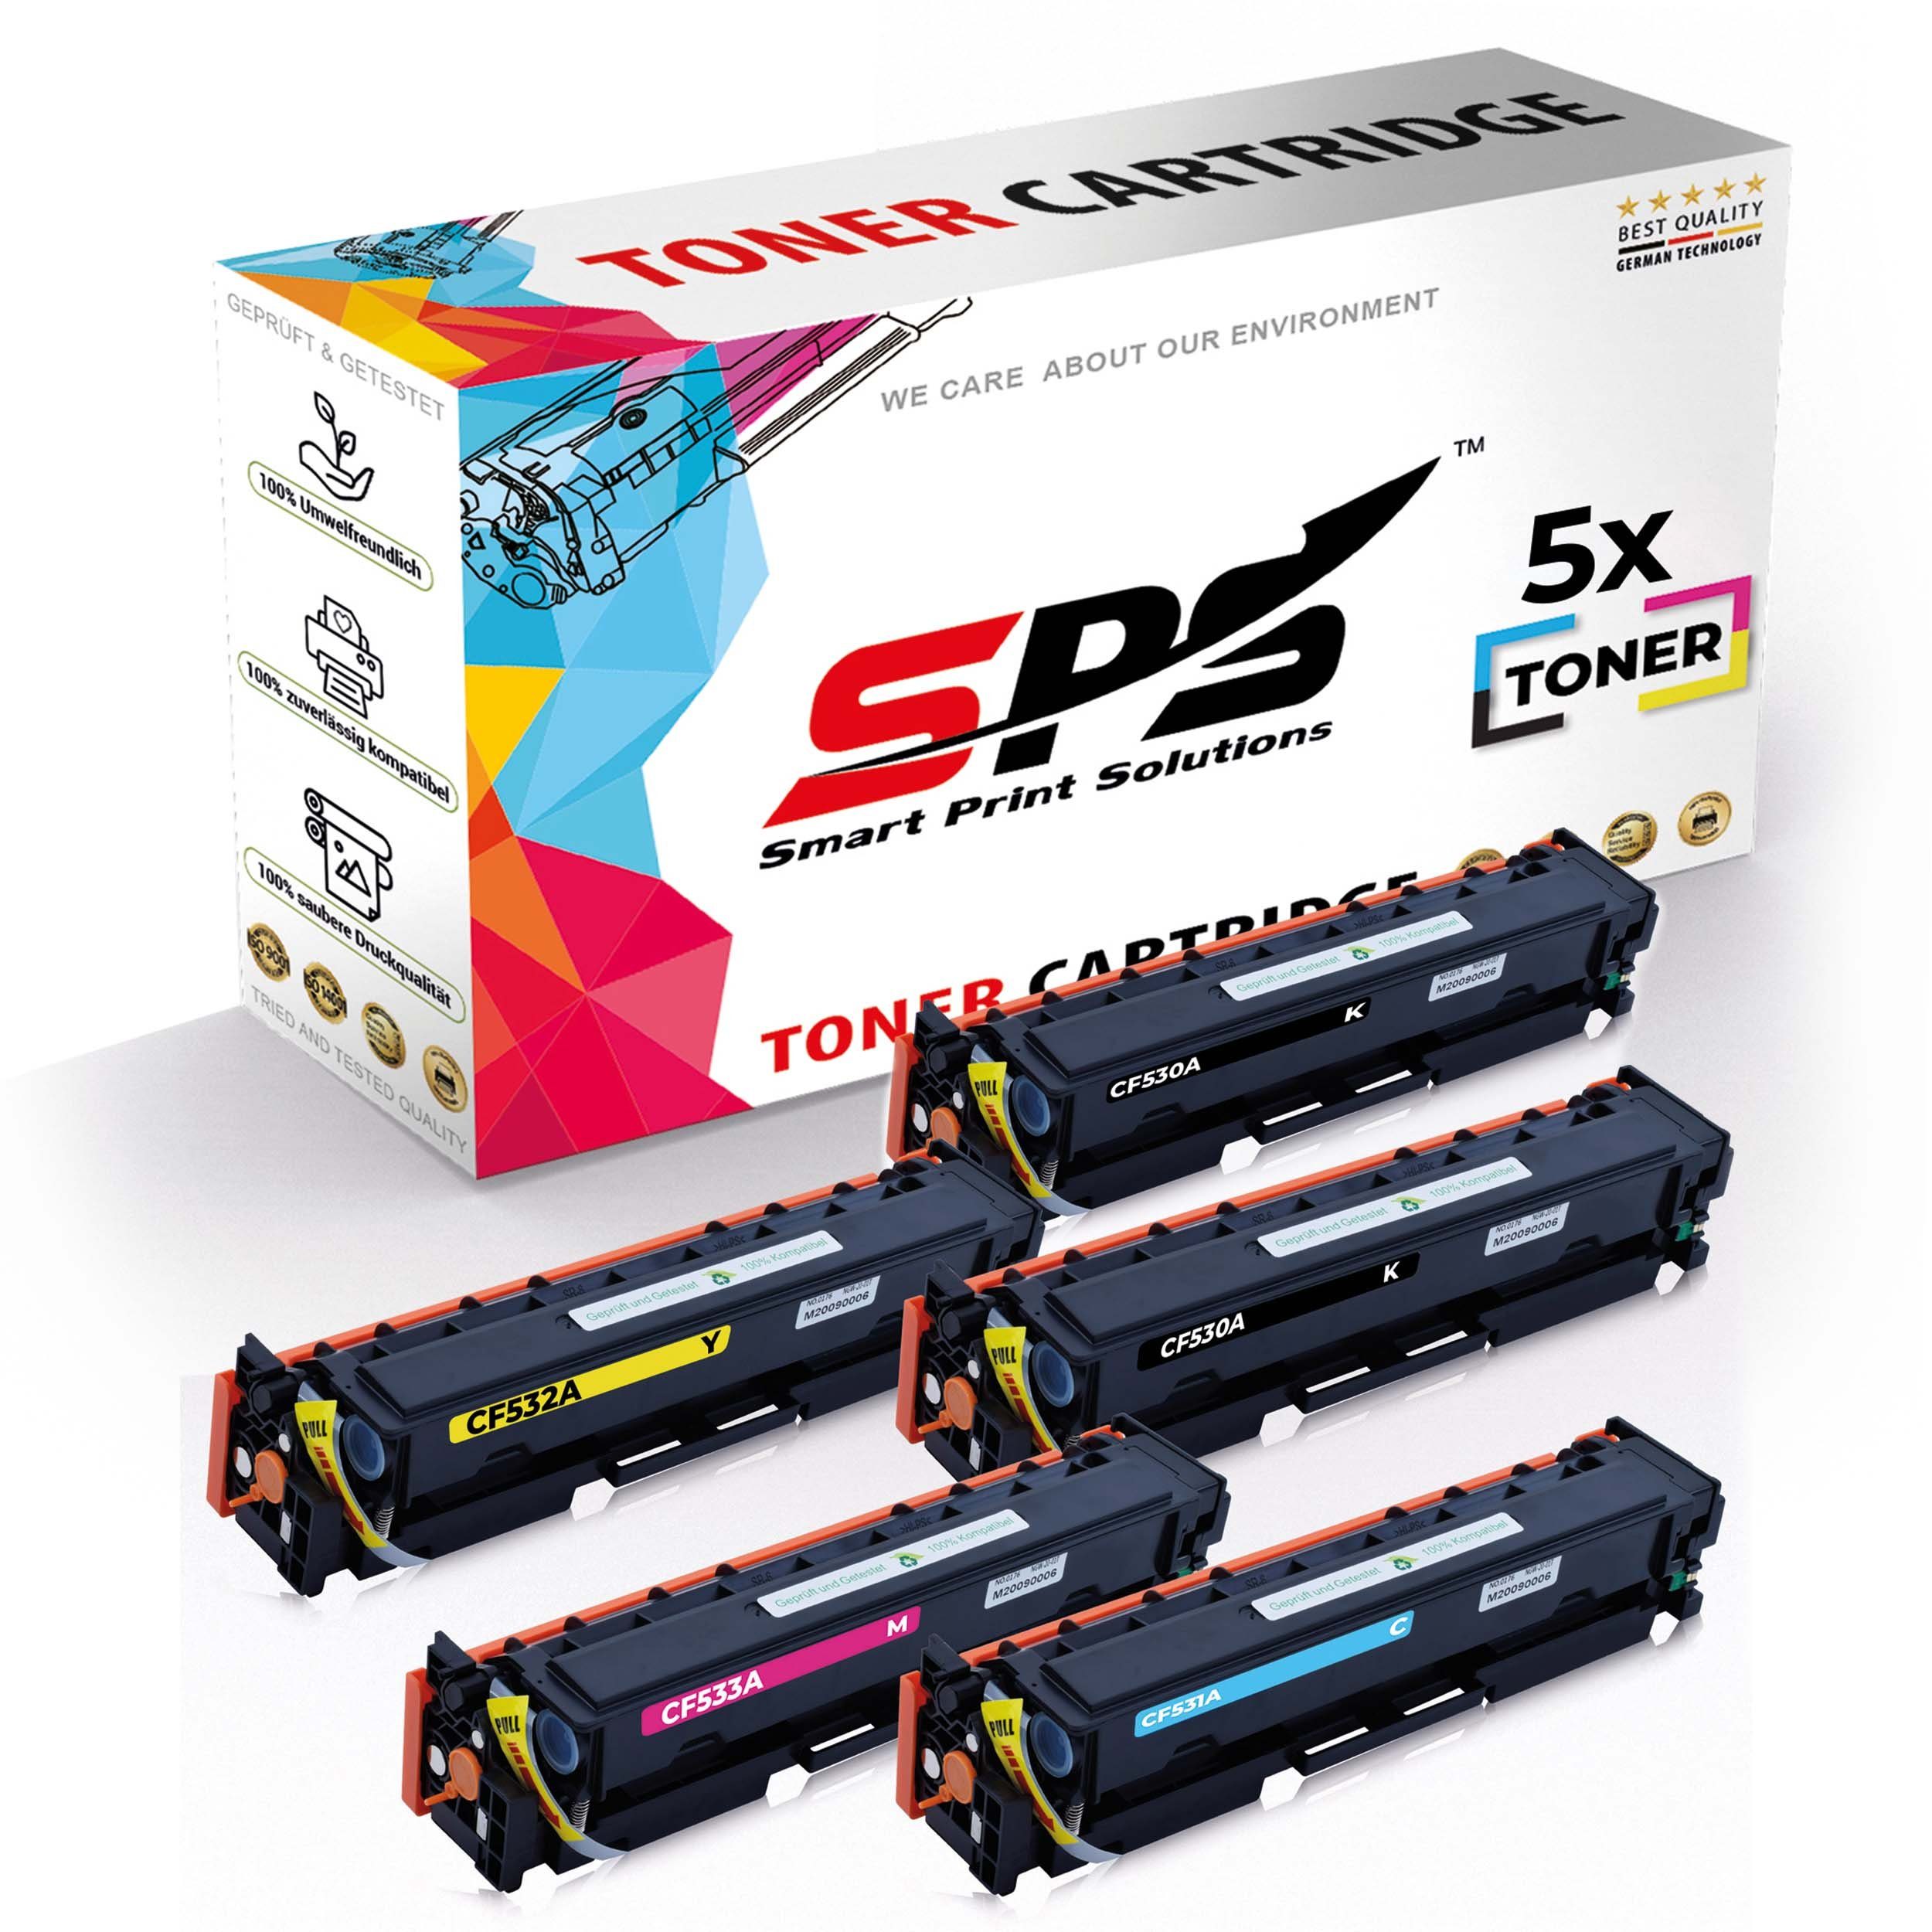 SPS Tonerkartusche 5x Multipack Set Kompatibel für HP Color LaserJet, (5er Pack, 5x Toner)